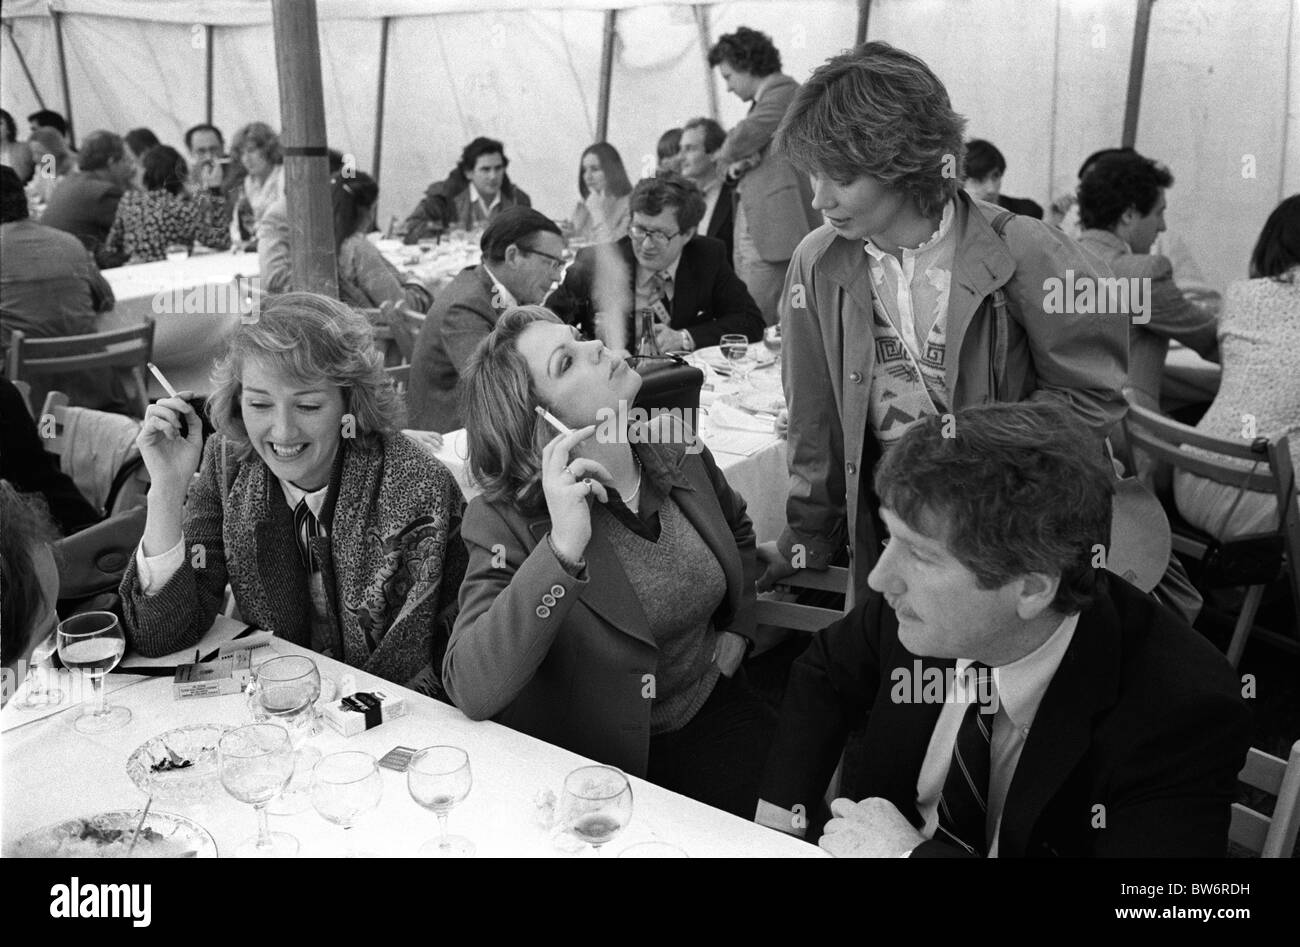 Zigaretten rauchen 1980er Jahre UK zwei Frauen nach dem Mittagessen im Cowdray Park Polo Club. West Sussex. Wohlhabender Lebensstil. Zigarettenrauch von ihrem Freund wegblasen. 80er Jahre Großbritannien 1981 HOMER SYKES Stockfoto